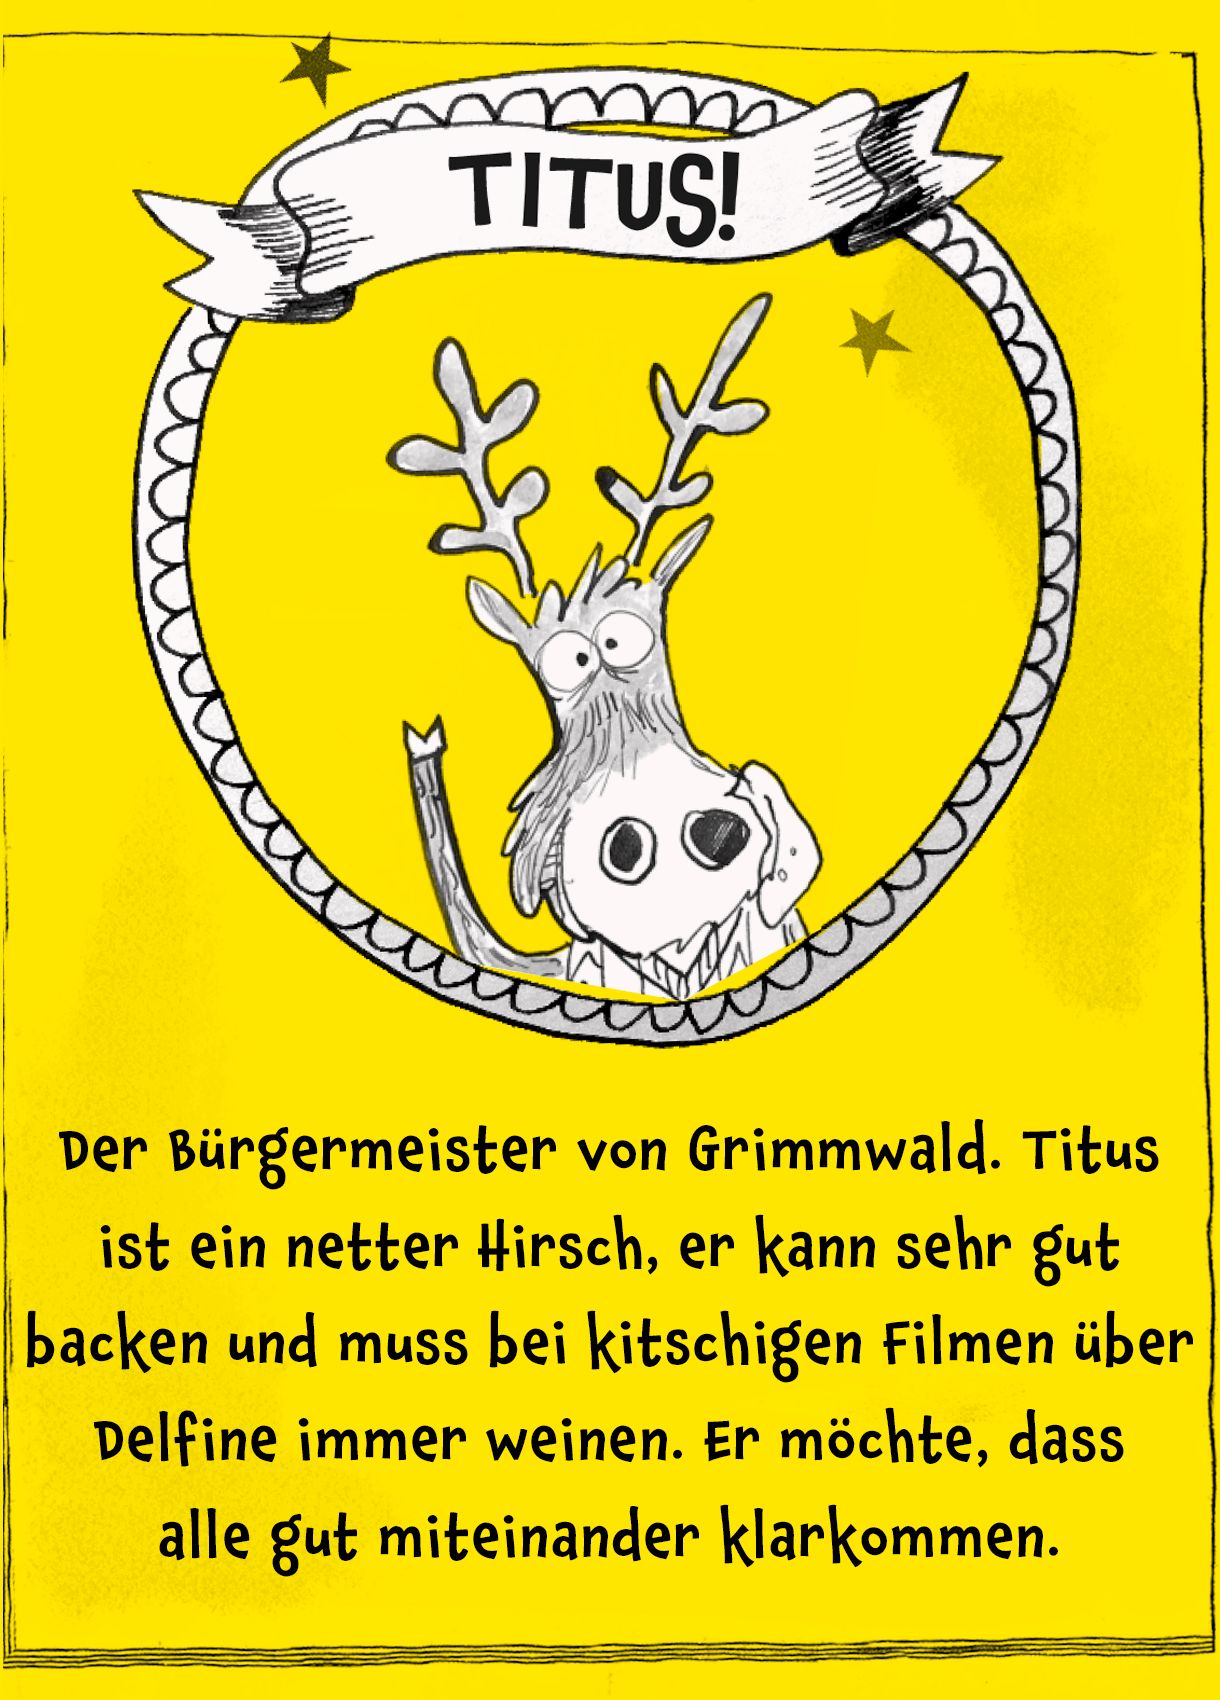 Bild von Elch Titus, darunter der Text: "Der Bürgermeister von Grimmwald. Titus ist ein netter Hirsch, er kann sehr gut backen und muss bei kitschigen Filmen über Delfine immer weinen. Er möchte, dass alle gut miteinander klarkommen. "